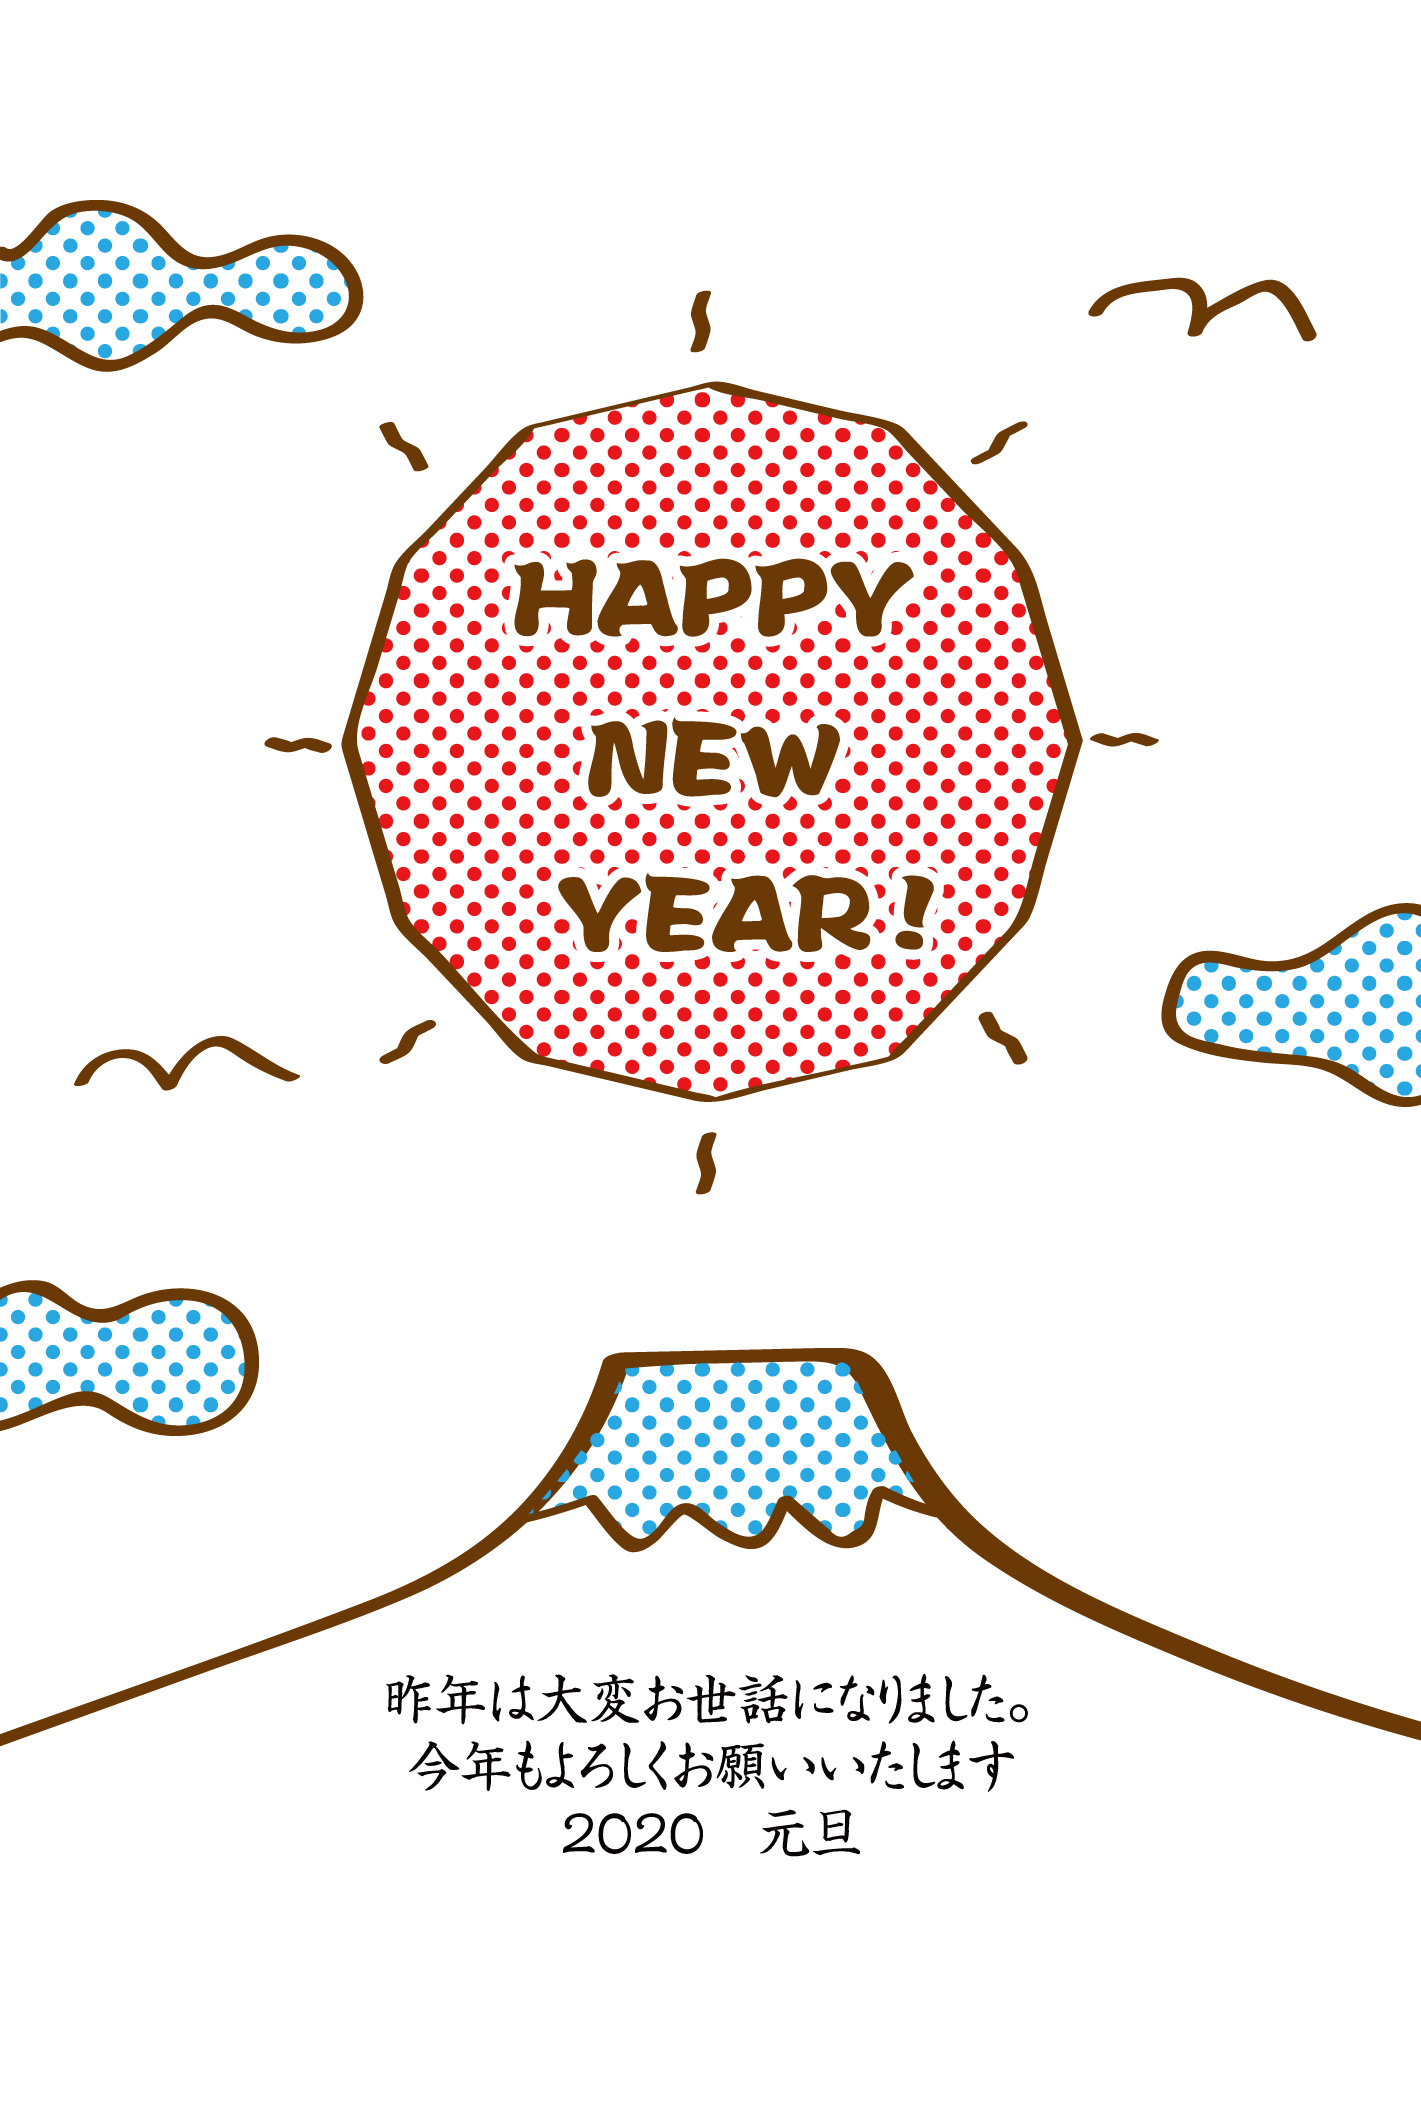 「HAPPY-NEW-YEAR」富士山と初日の出のゆるかわ年賀状イラスト素材です-挨拶文あり